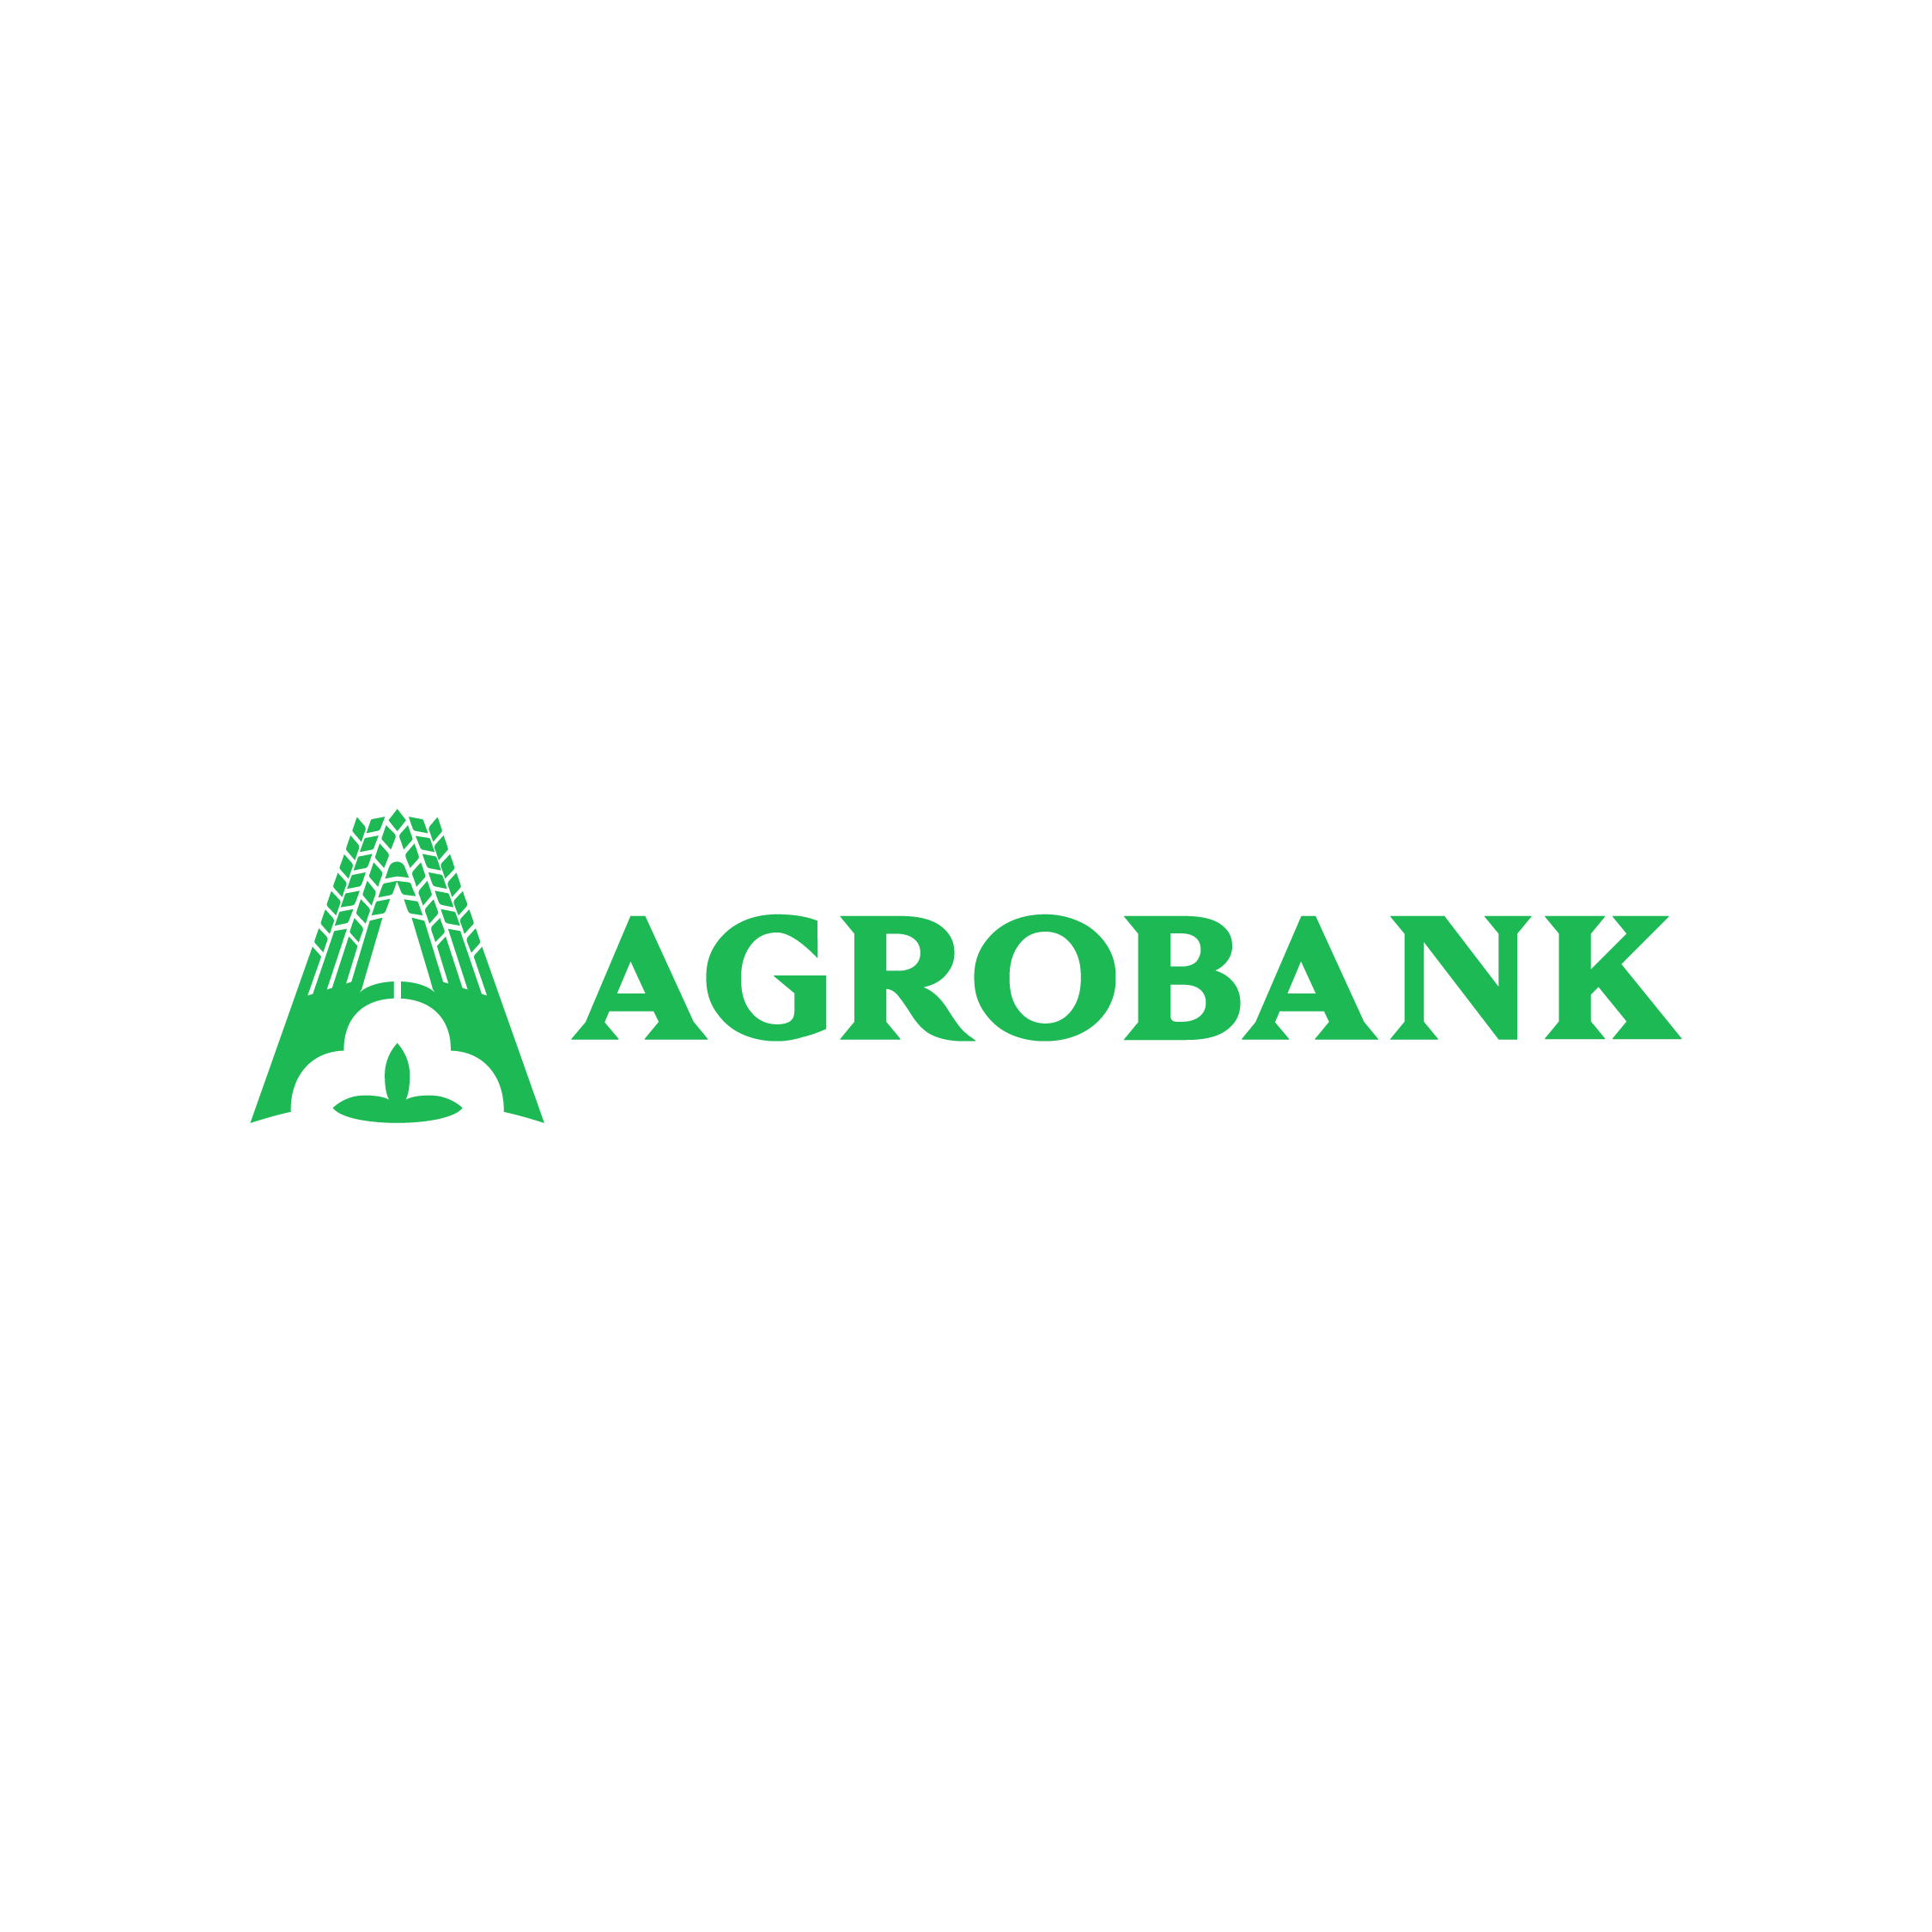 Агрос банк. Агробанк логотип. Агробанк Узбекистан. Агробанк Узбекистан лого. Агра банк.